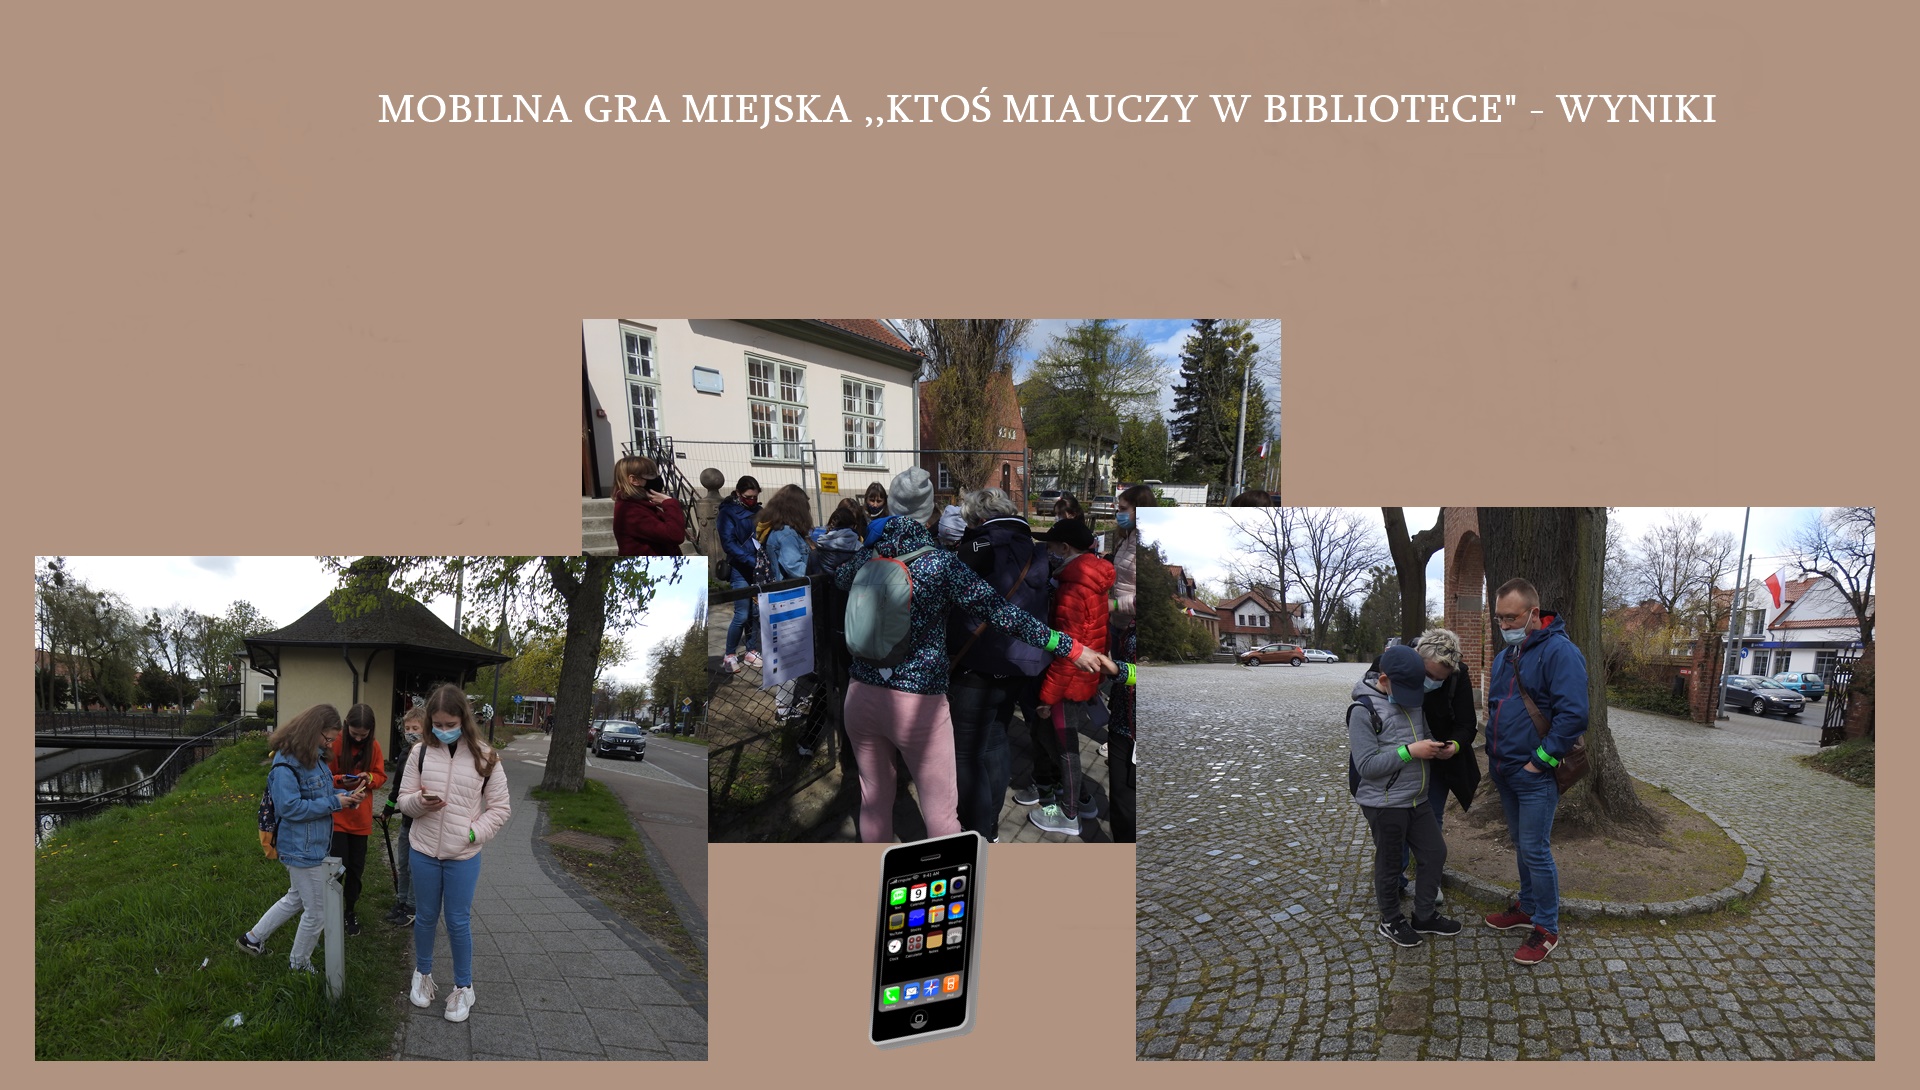 Napis Mobilna gra Miejska - wyniki, ikona telefonu komórkowego oraz wklejone 3 zdjęcia przedstawiające osoby z telefonami w rękach.